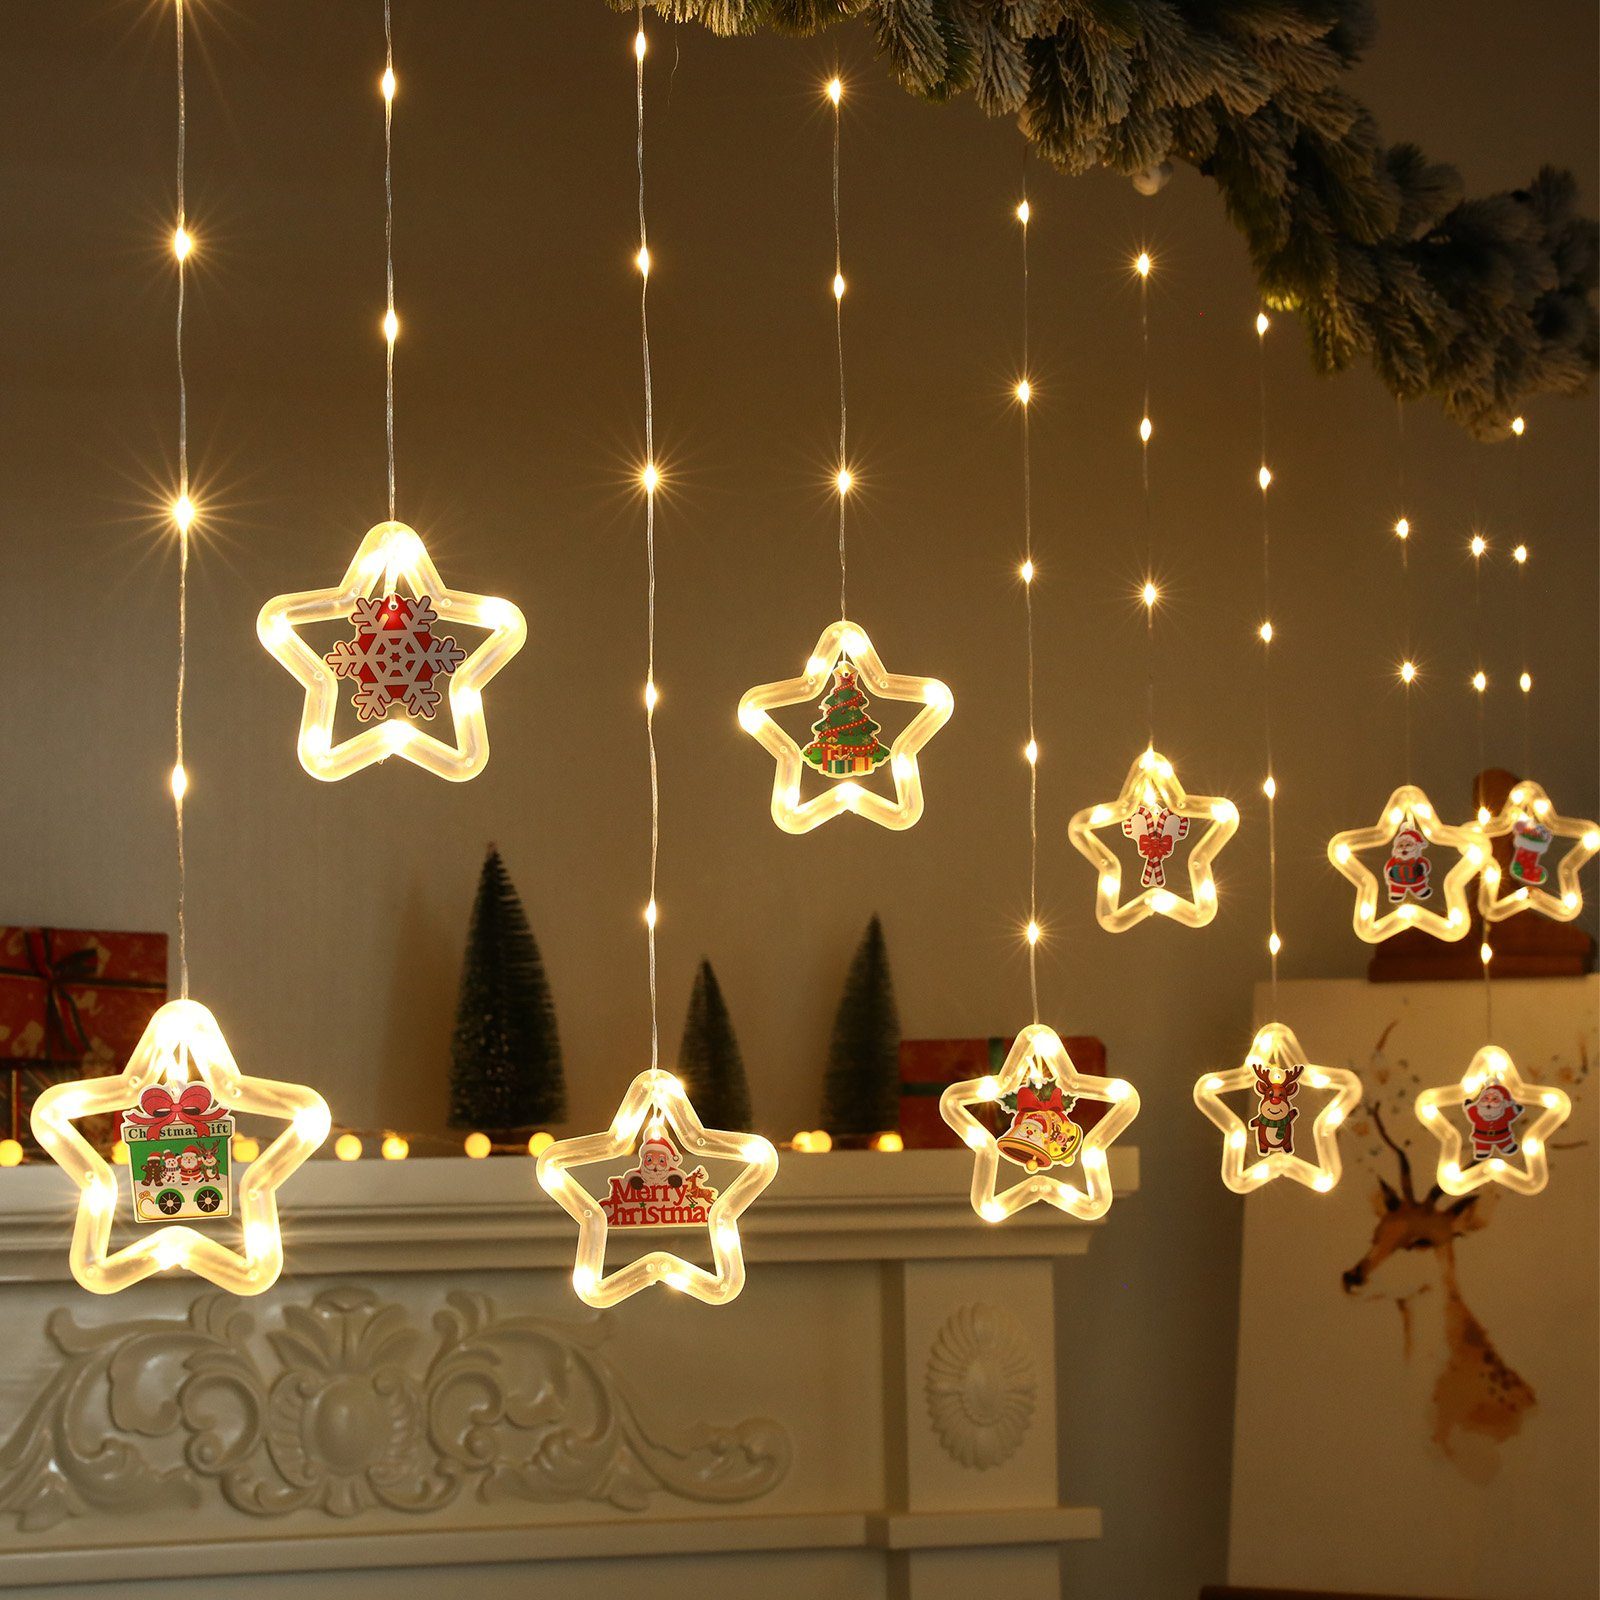 Sunicol LED-Lichtervorhang 3M LED Weihnachten Fensterbeleuchtung mit Timer, Party Garten Deko, 8 Modi LED Lichterkette mit Fernsteuerung, Warmweiß/RGB, Batterien/USB